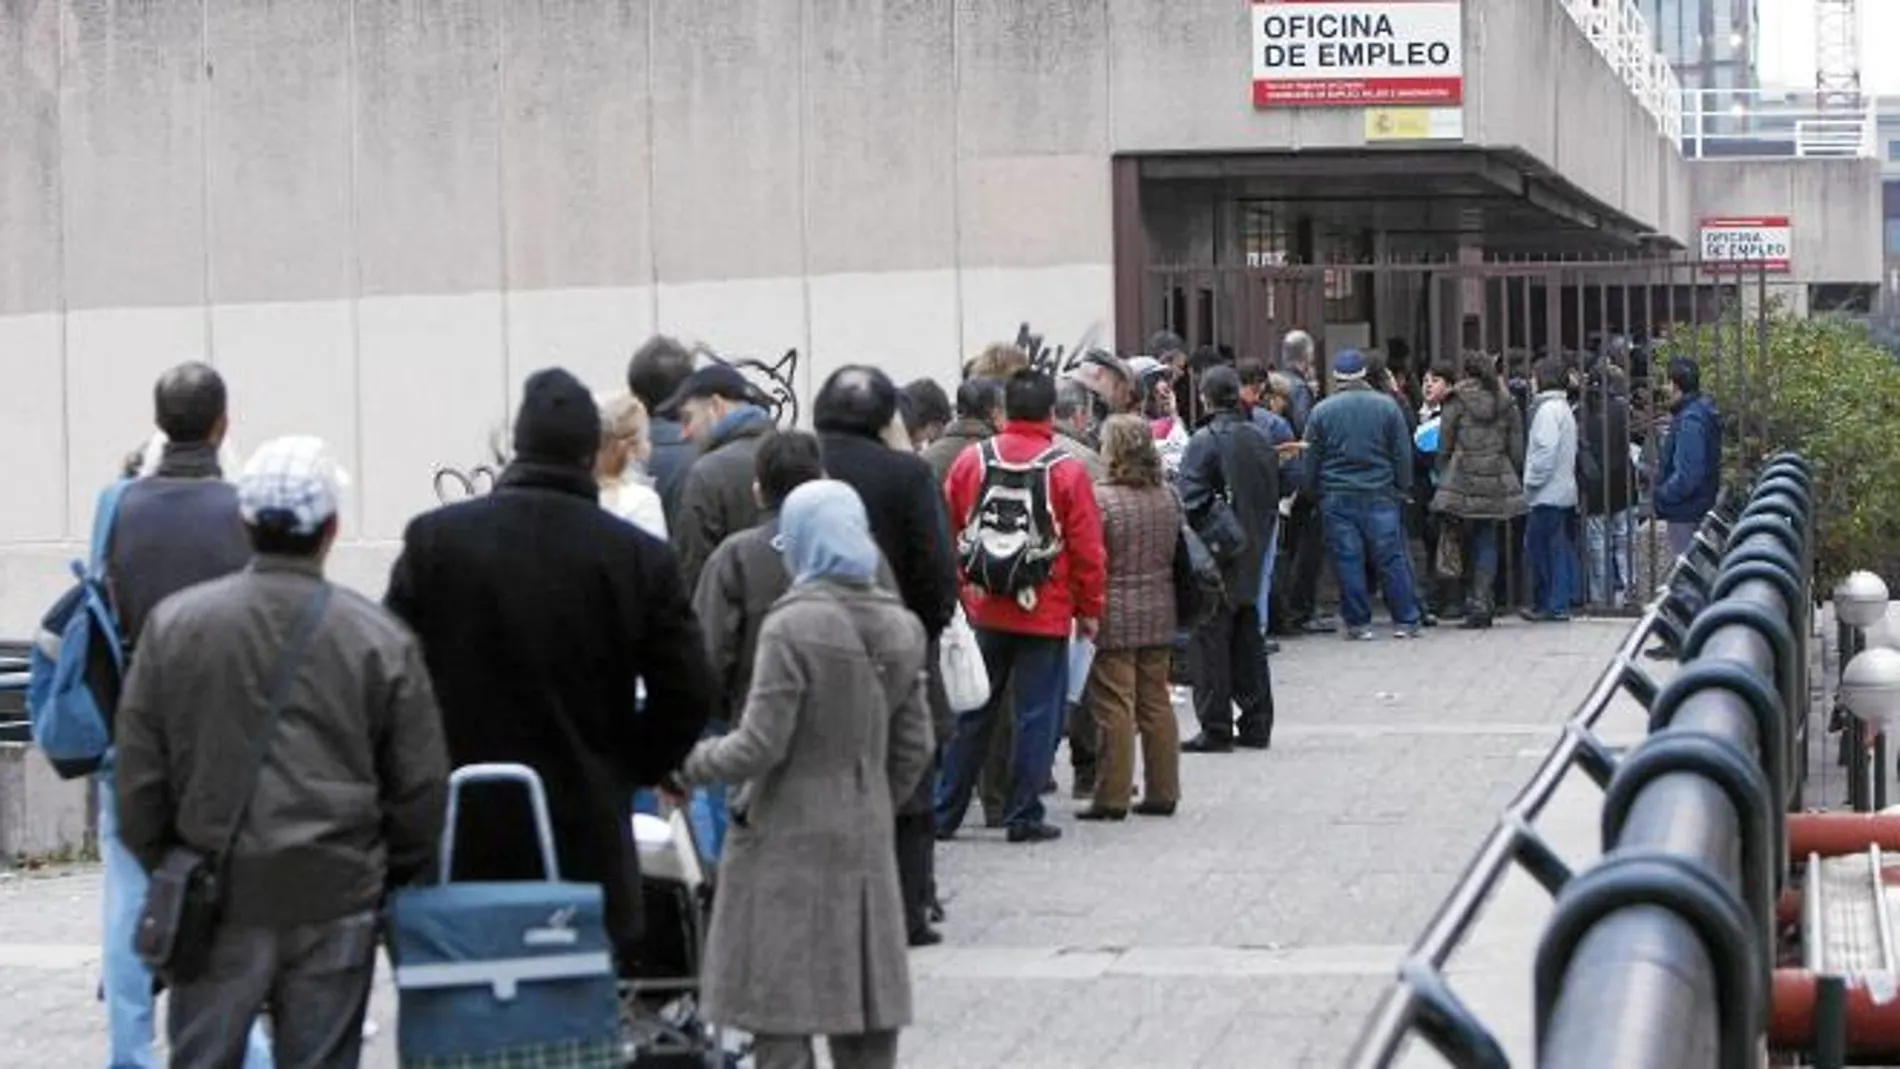 Imagen de personas haciendo cola frente a la oficina de empleo